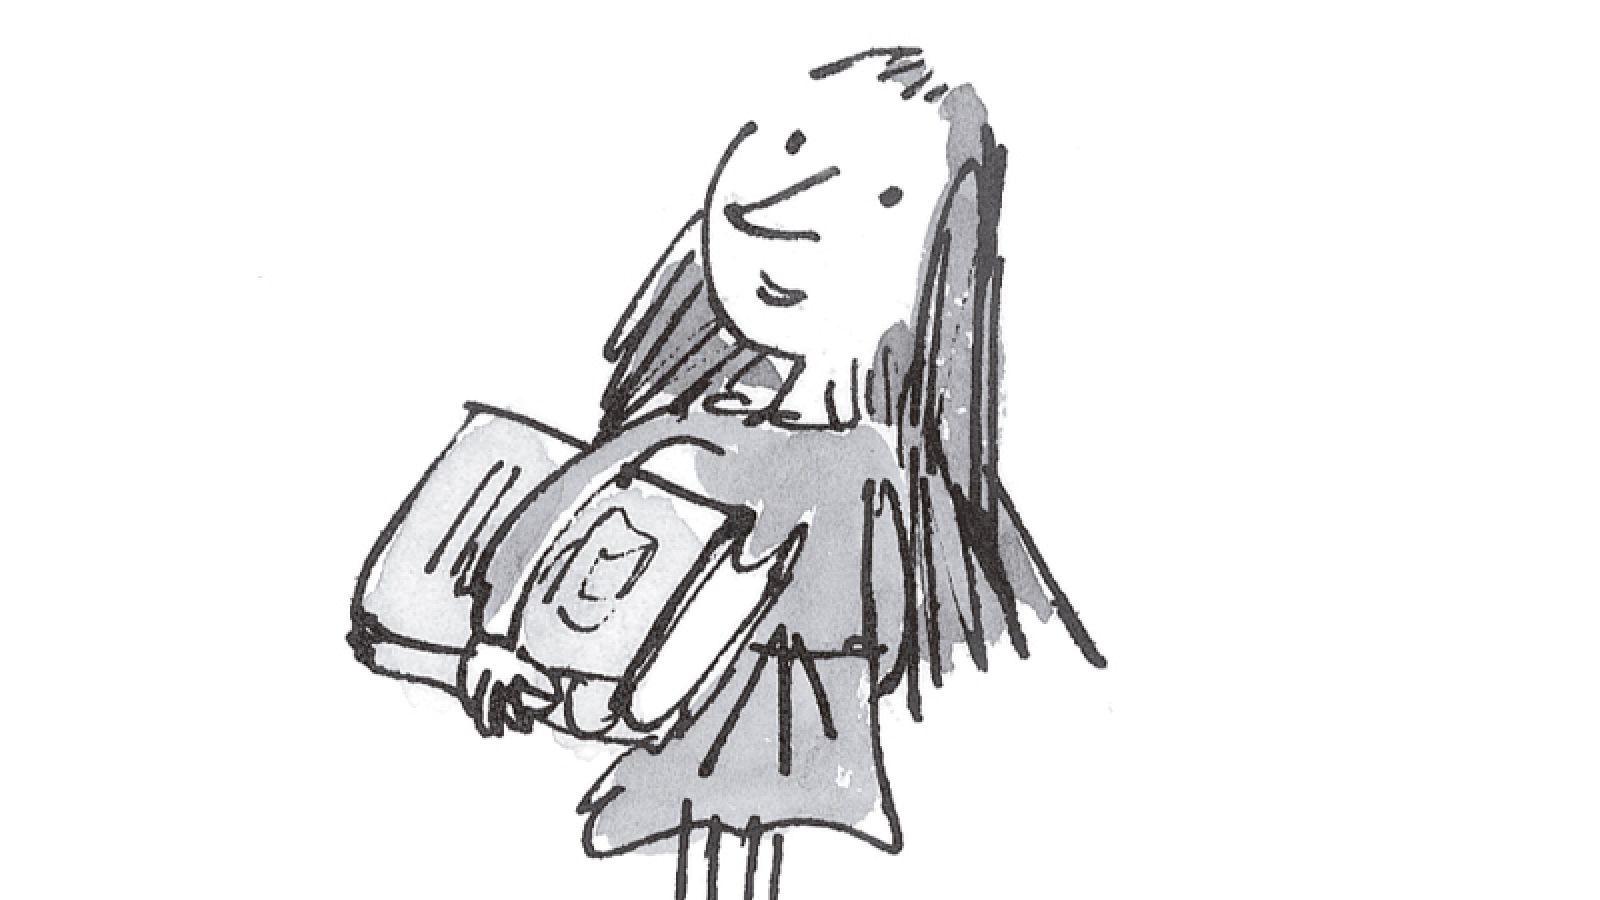 Dibujo de 'Matilda' que en su aniversario reedita Penguin Random House con sus ilustraciones originales.